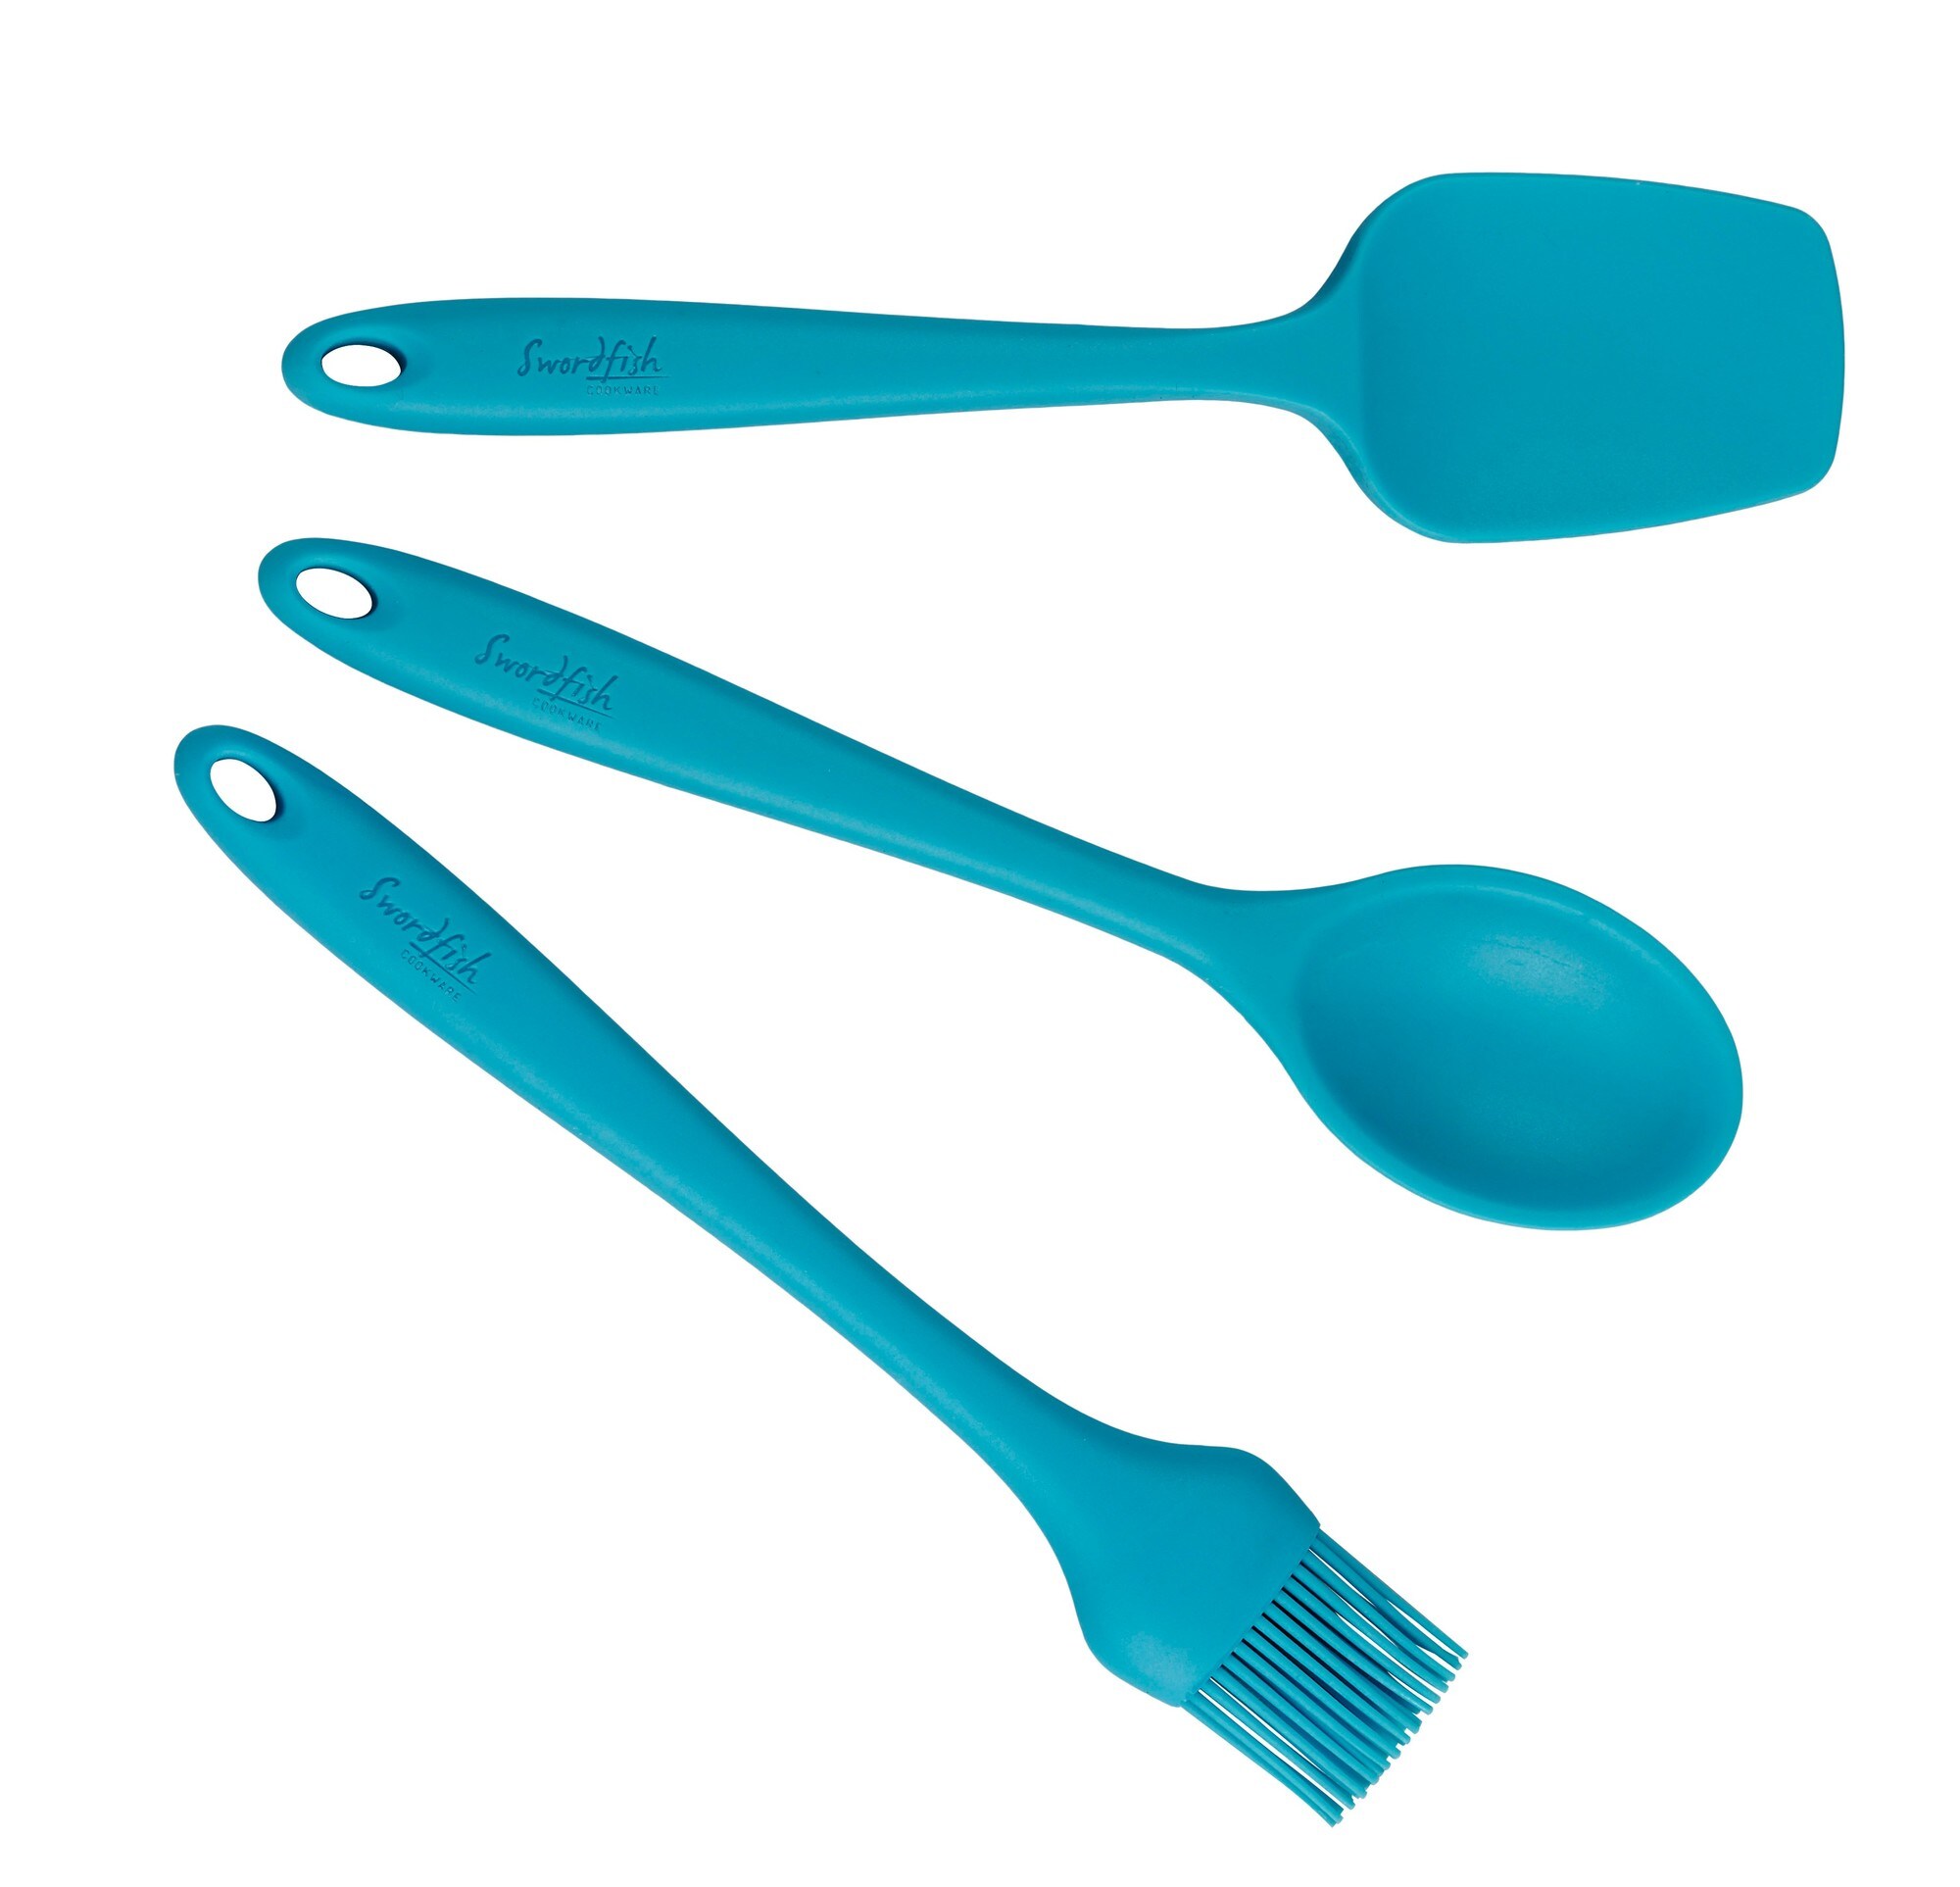 Swordfish kjøkkenredskap silikon (blå) - Elkjøp